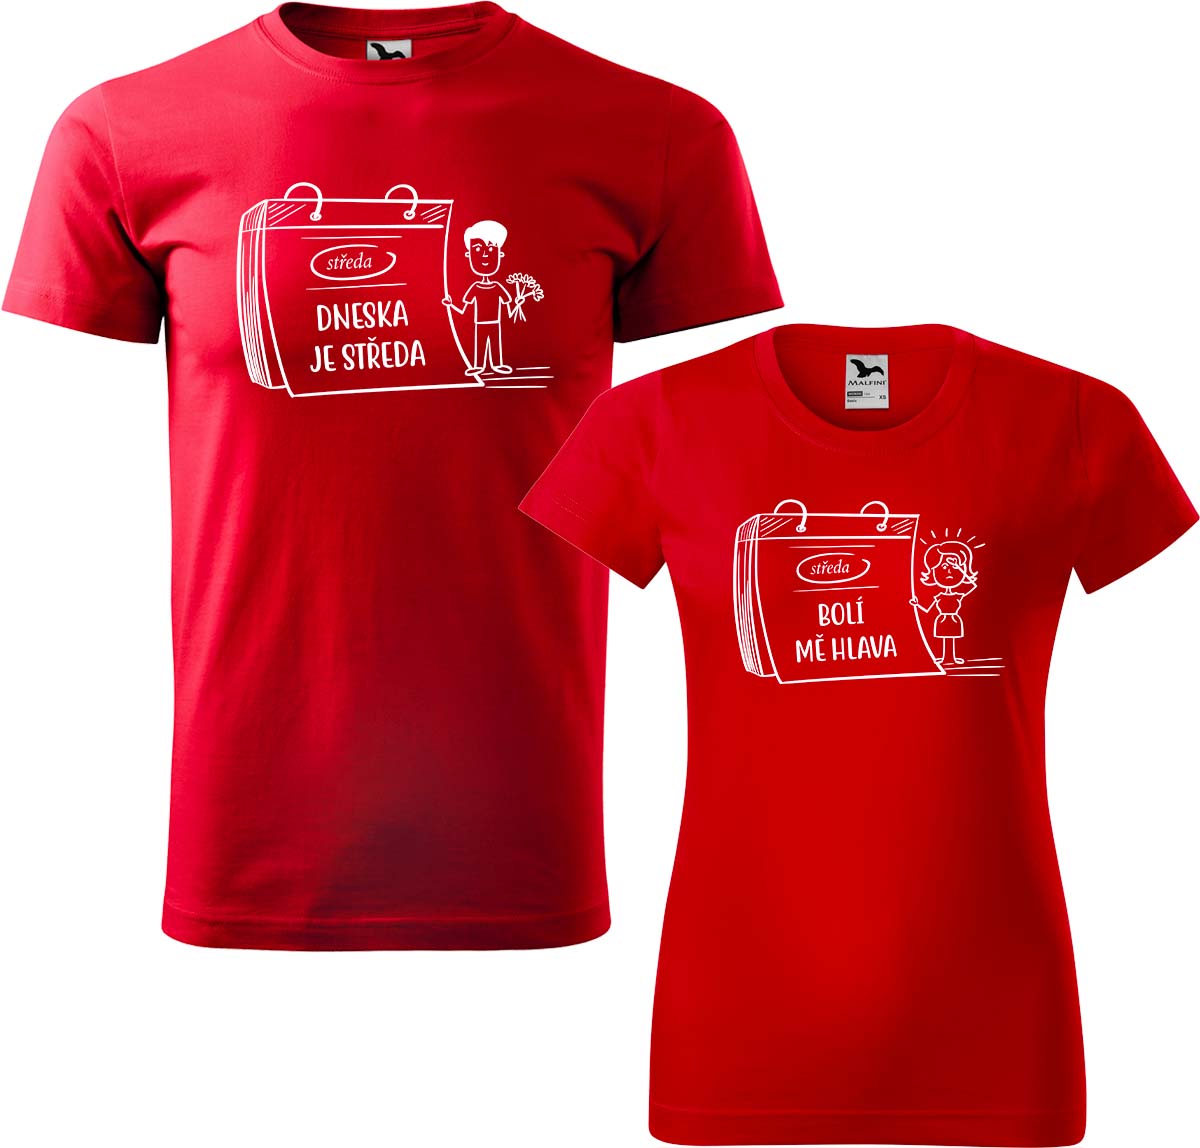 Trička pro páry - Dneska je středa Barva: Červená (07), Velikost dámské tričko: S, Velikost pánské tričko: 3XL